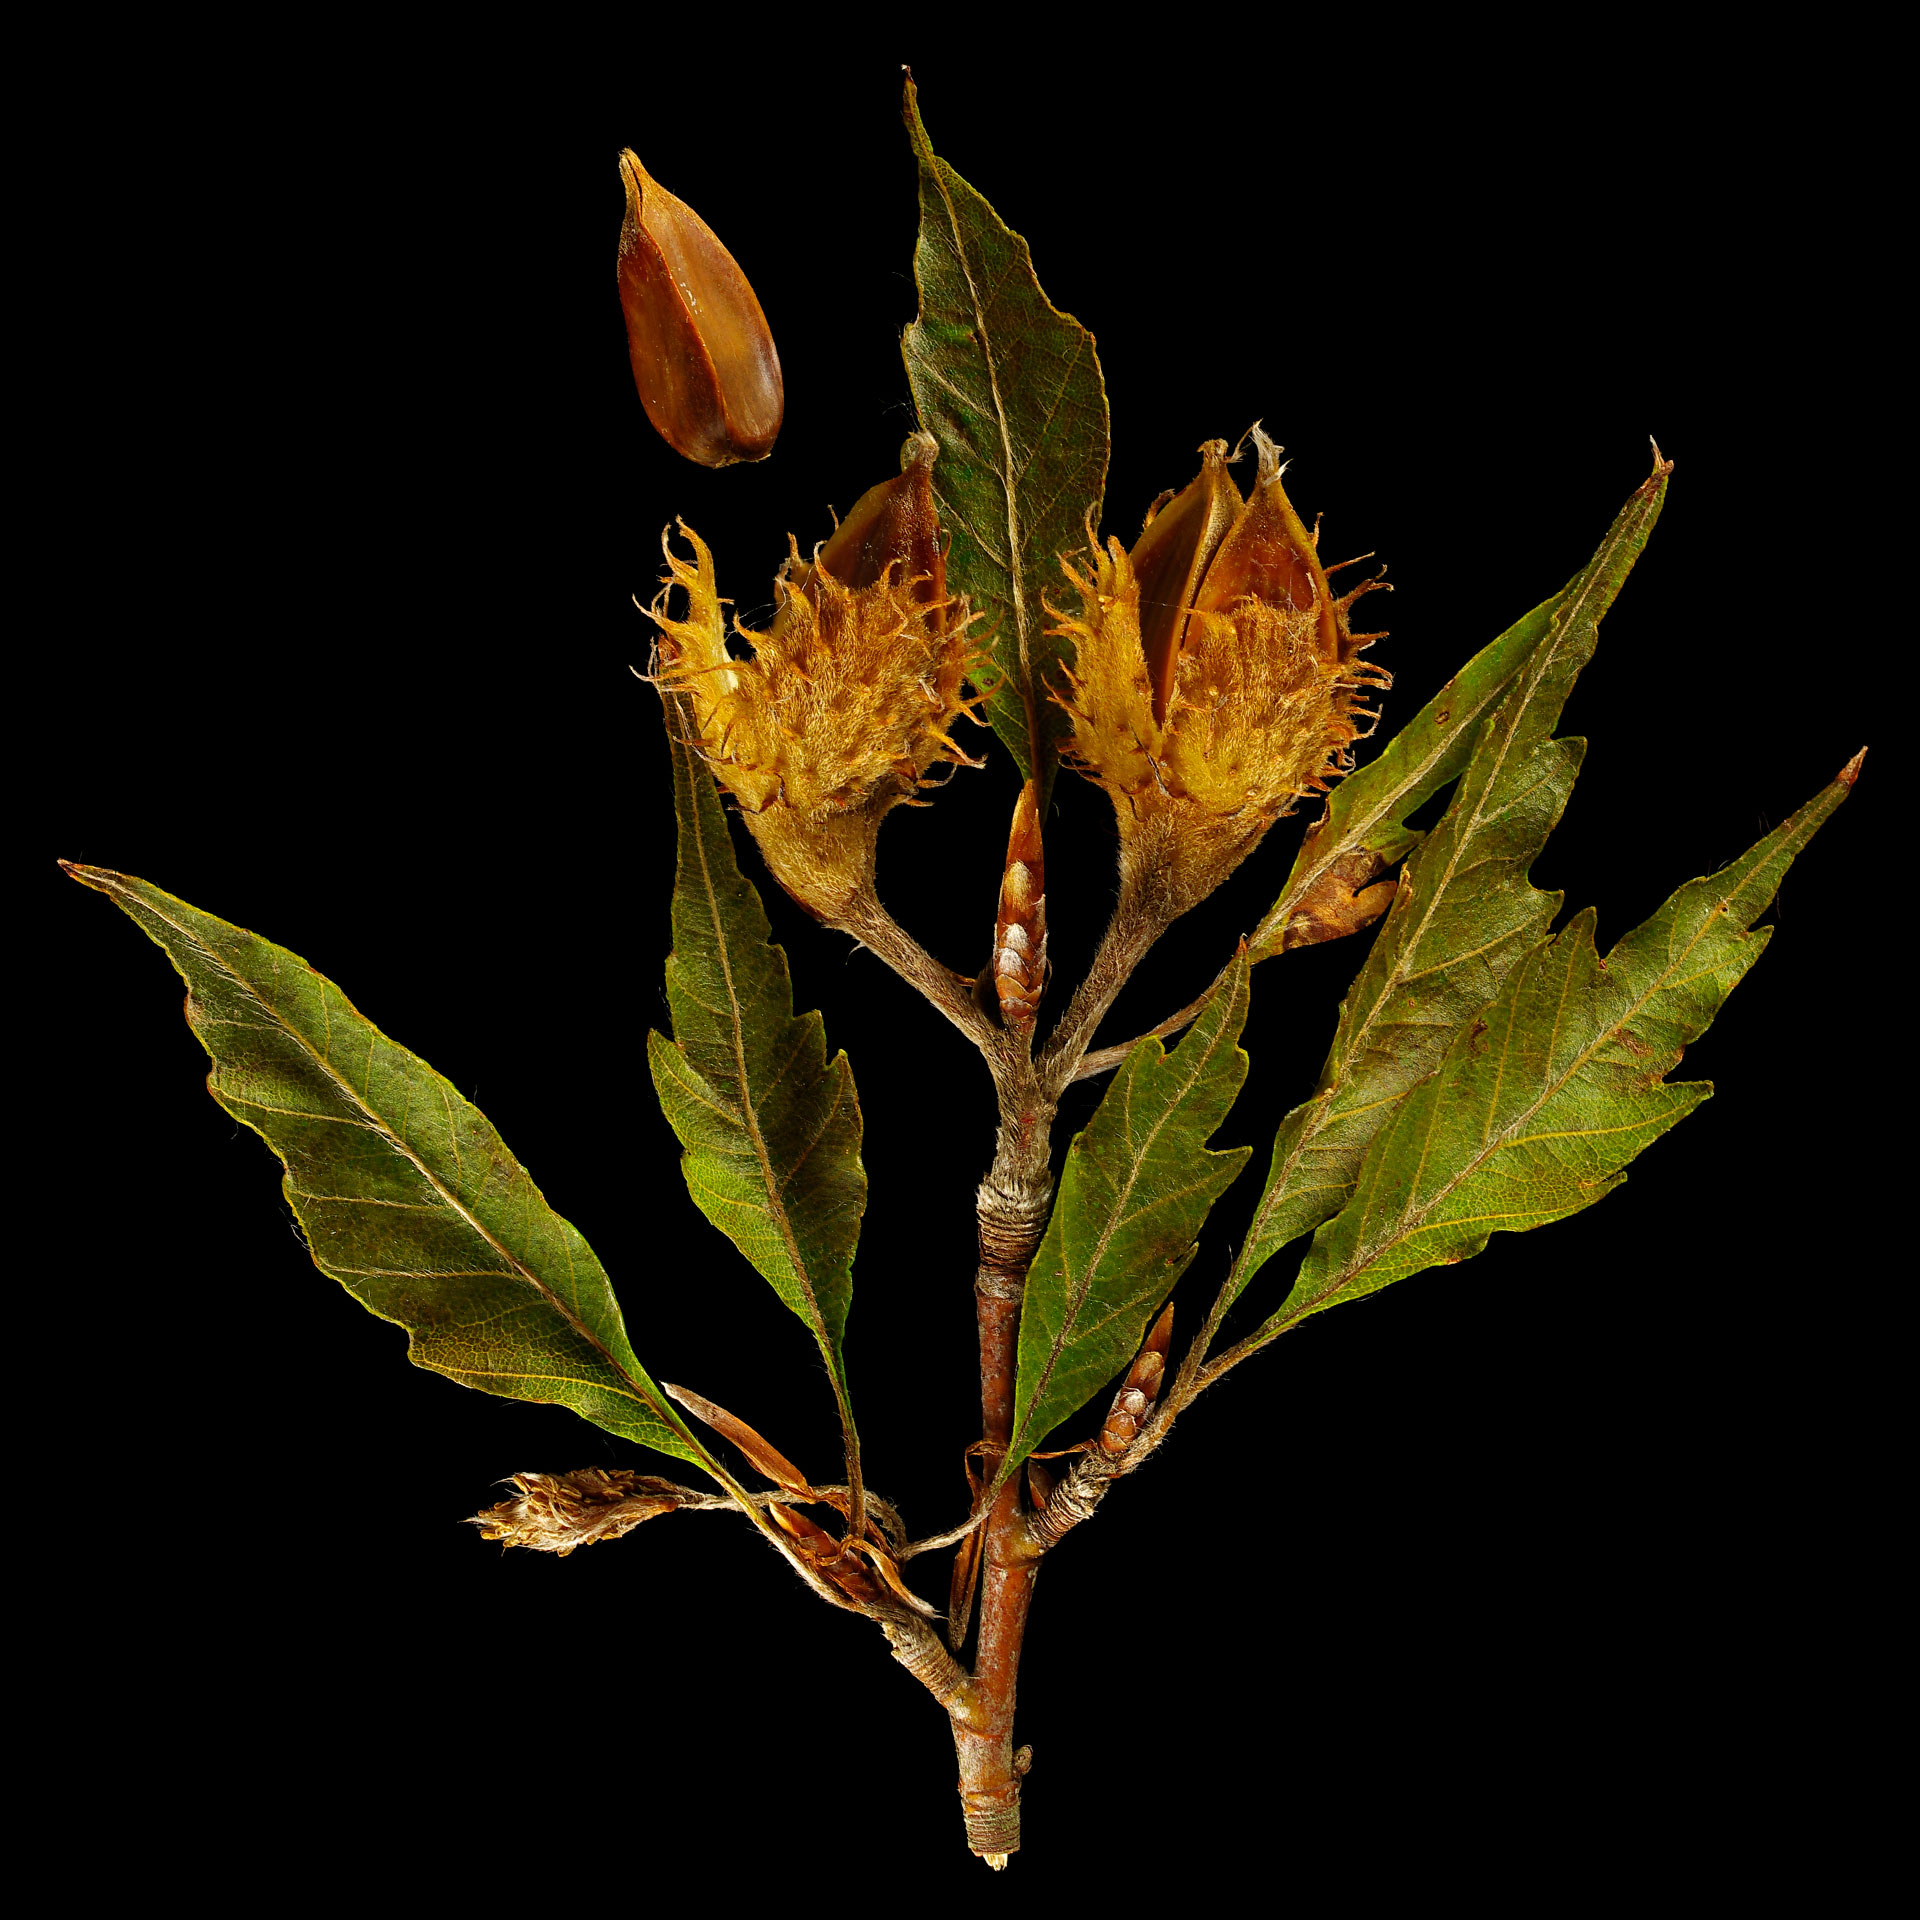 Beechnuts of fern-leaf beech: Fagus sylvatica forma Asplenifolia